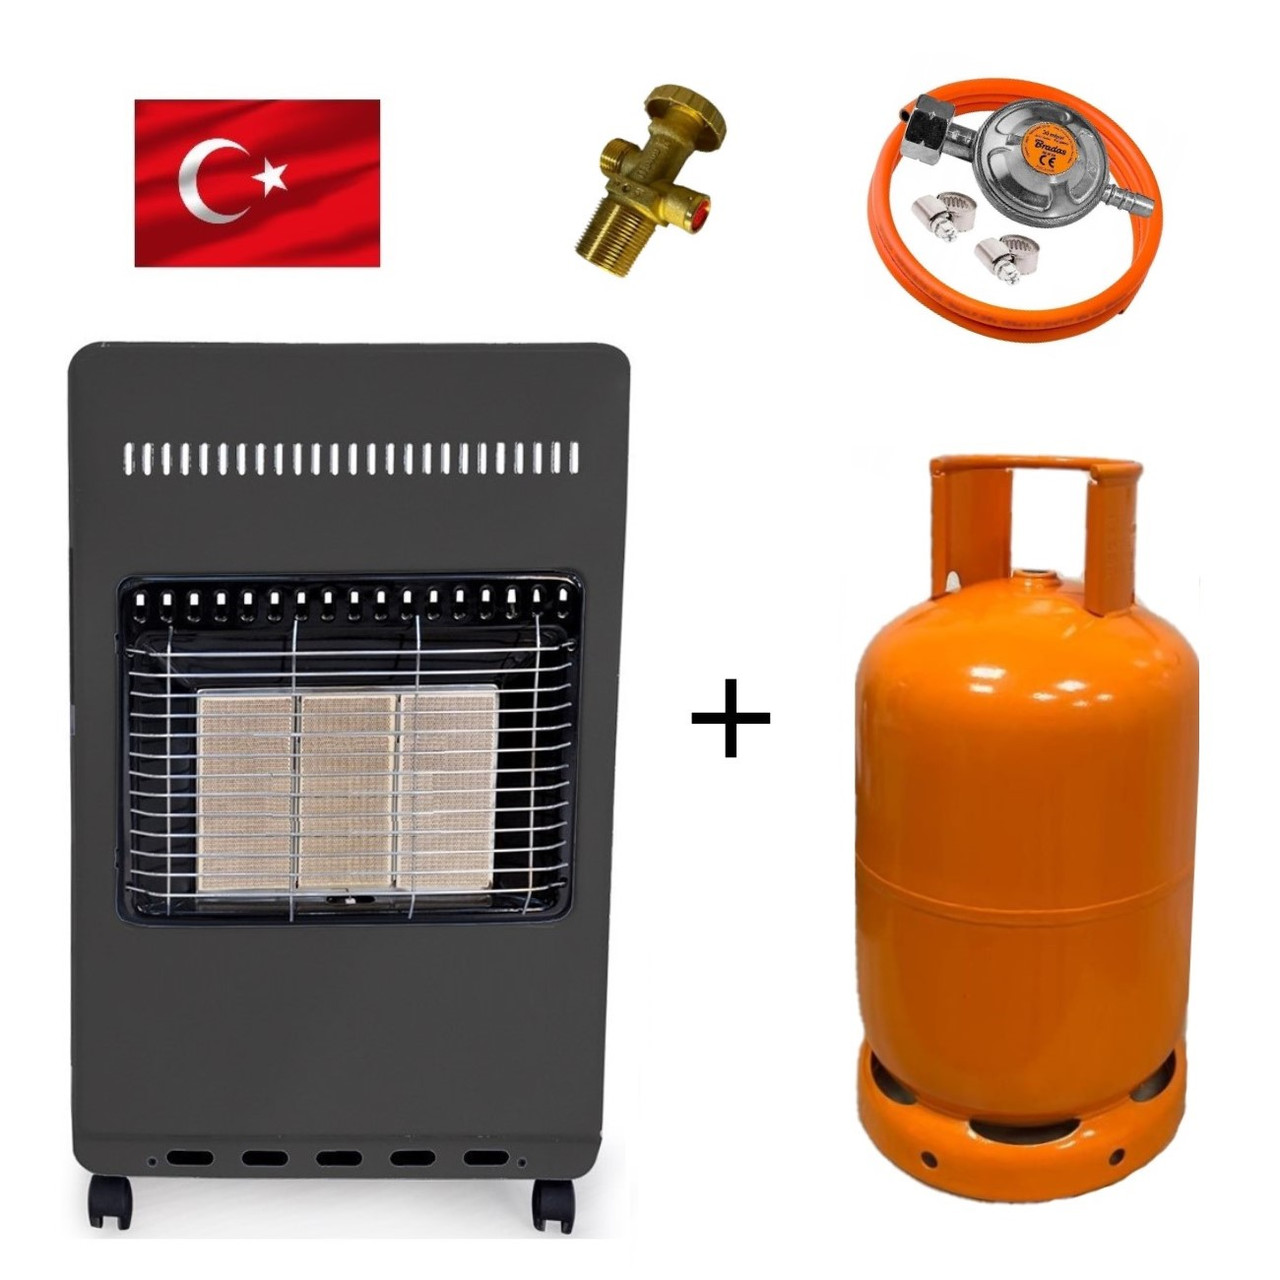 Обігрівач газовий 4,2 кВт + Балон 26,2л (з редуктором, шлангом і вентиль)  FLATELLI - Туреччина